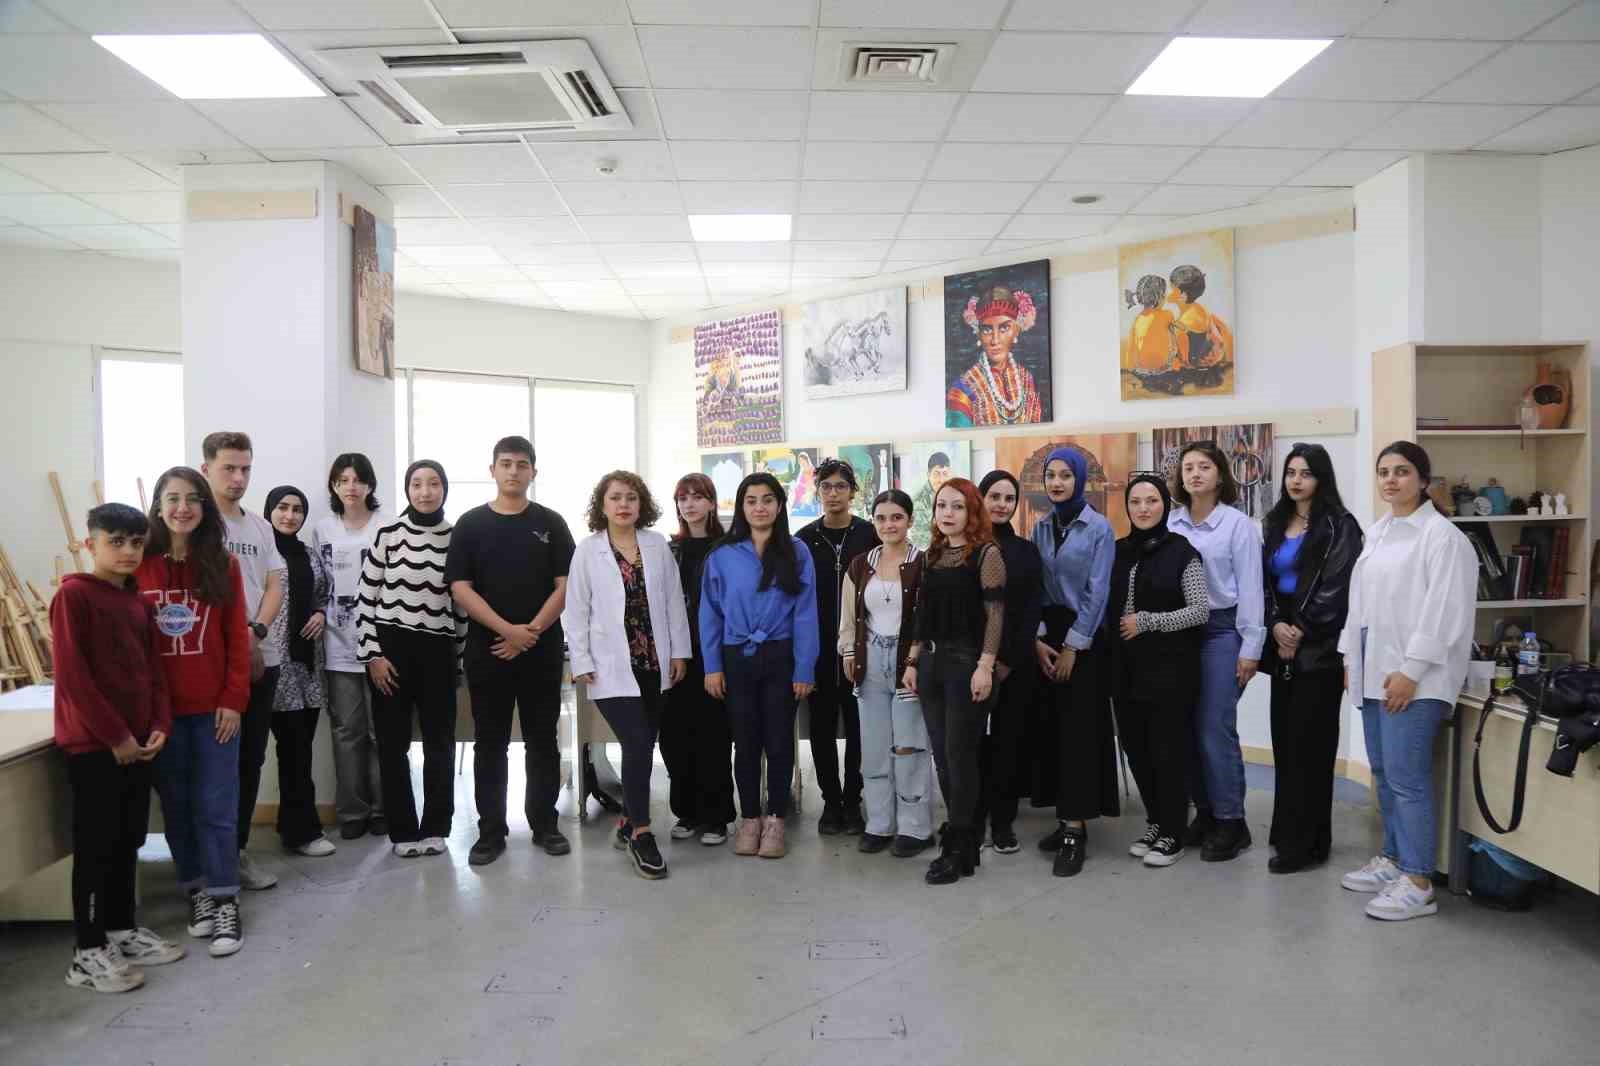 Gaziantep Büyükşehir Belediyesi'nin GASMEK kursları gençlere üniversite kapılarını açıyor